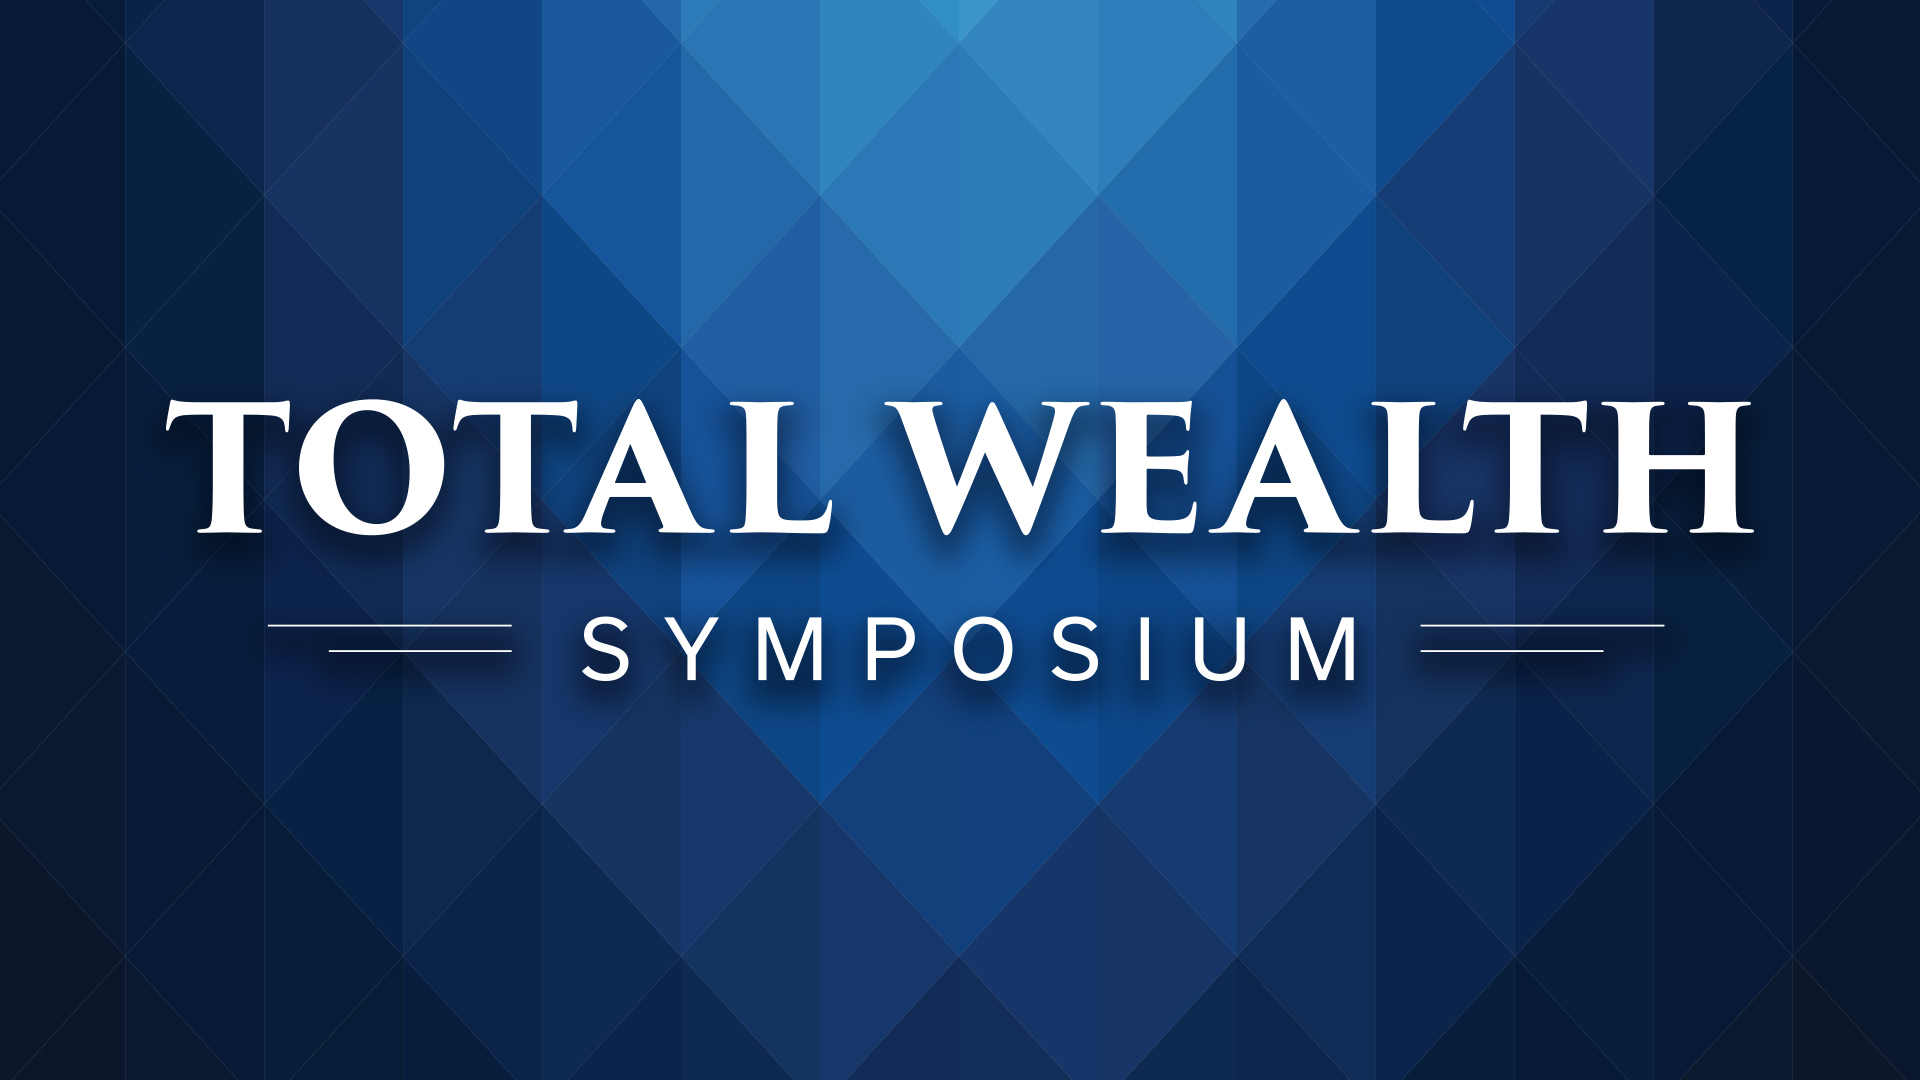 Total Wealth Symposium